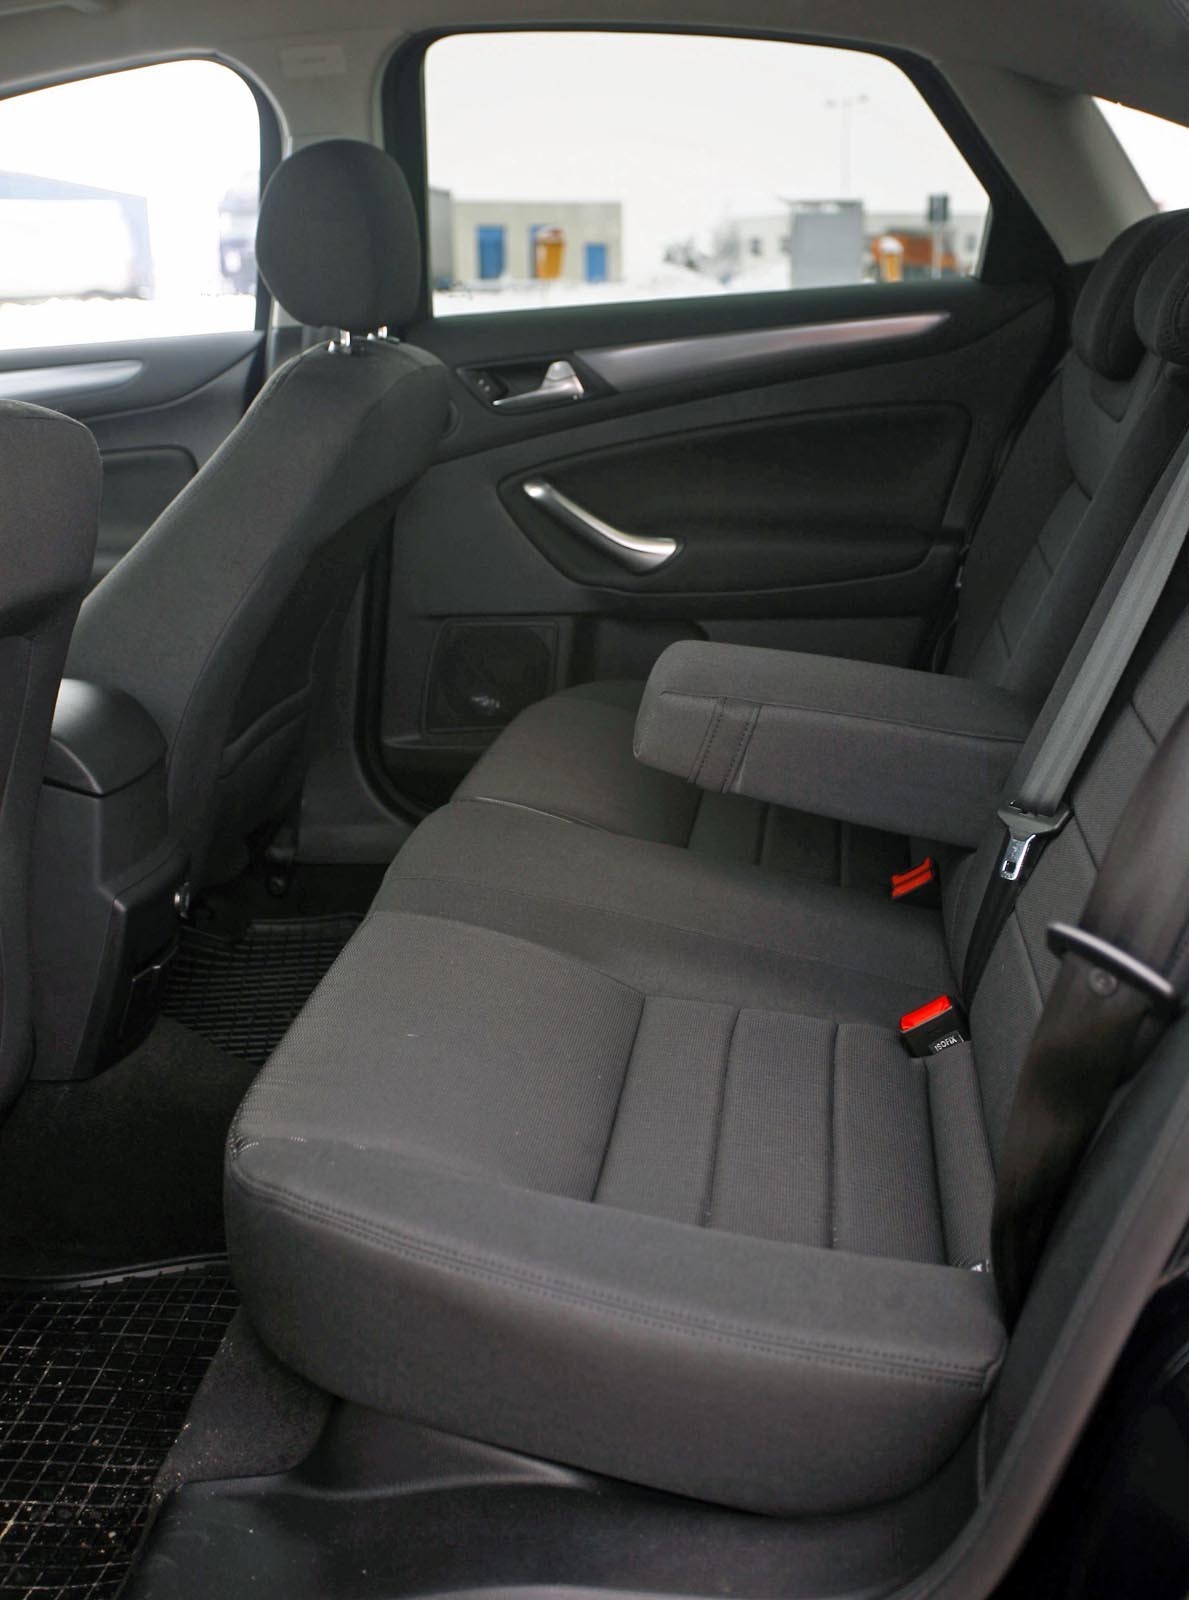 Ford Mondeo ofera cel mai mare spatiu pentru pasageri si un portbagaj mai practic